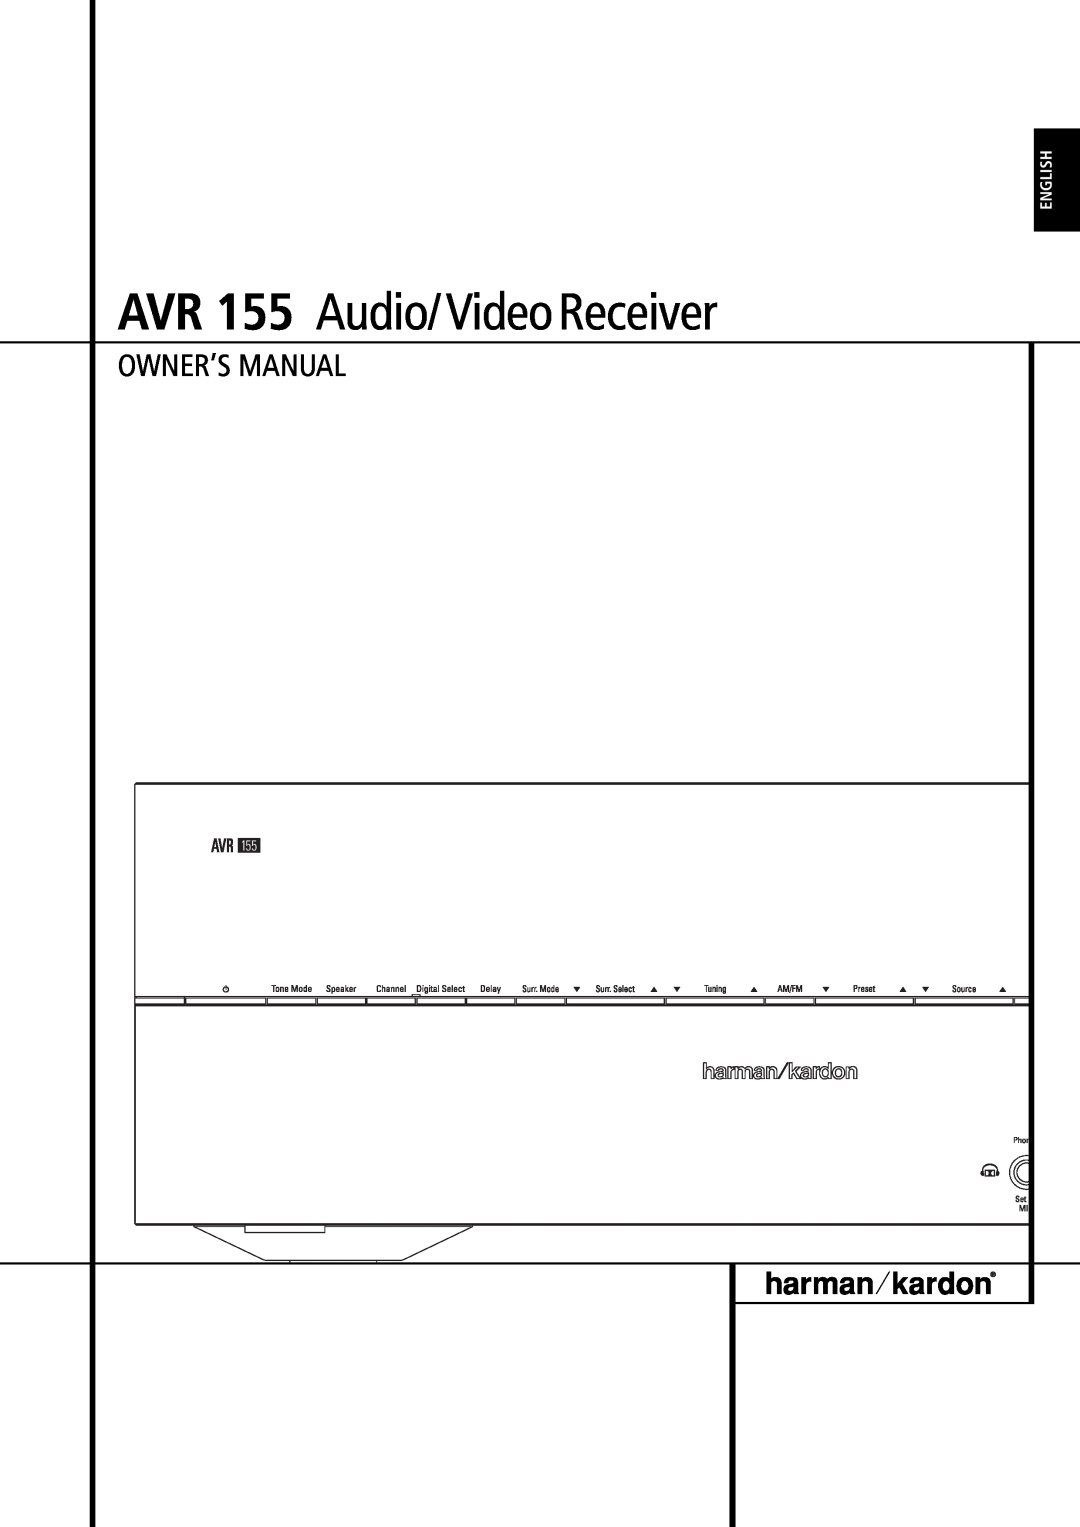 Harman-Kardon owner manual AVR 155 Audio/VideoReceiver, English 